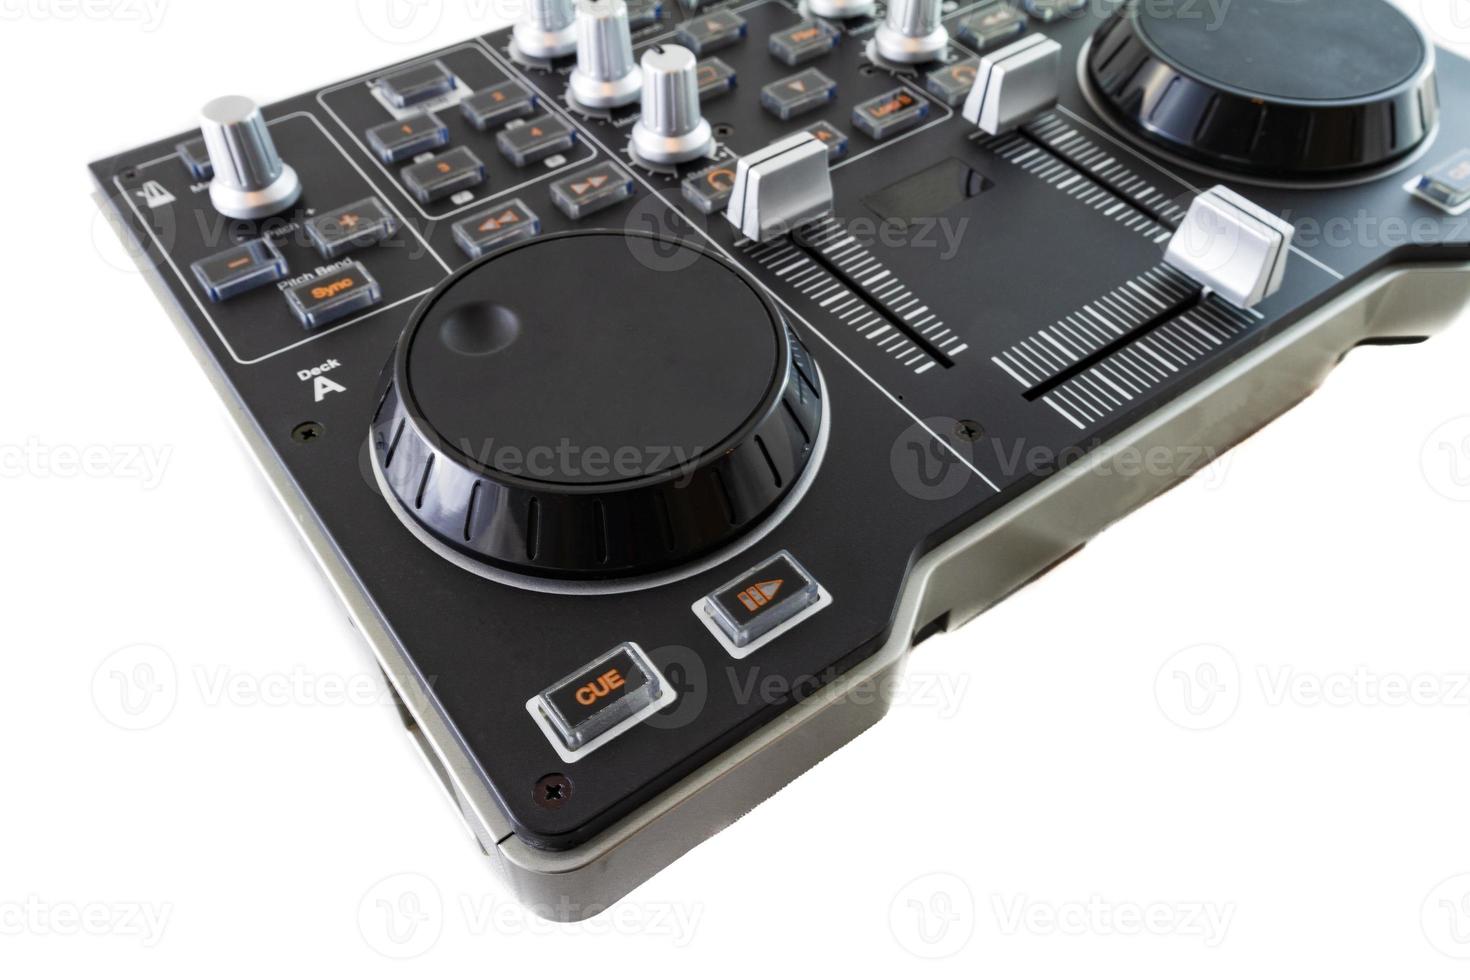 Portable DJ Control Mixer on white background photo